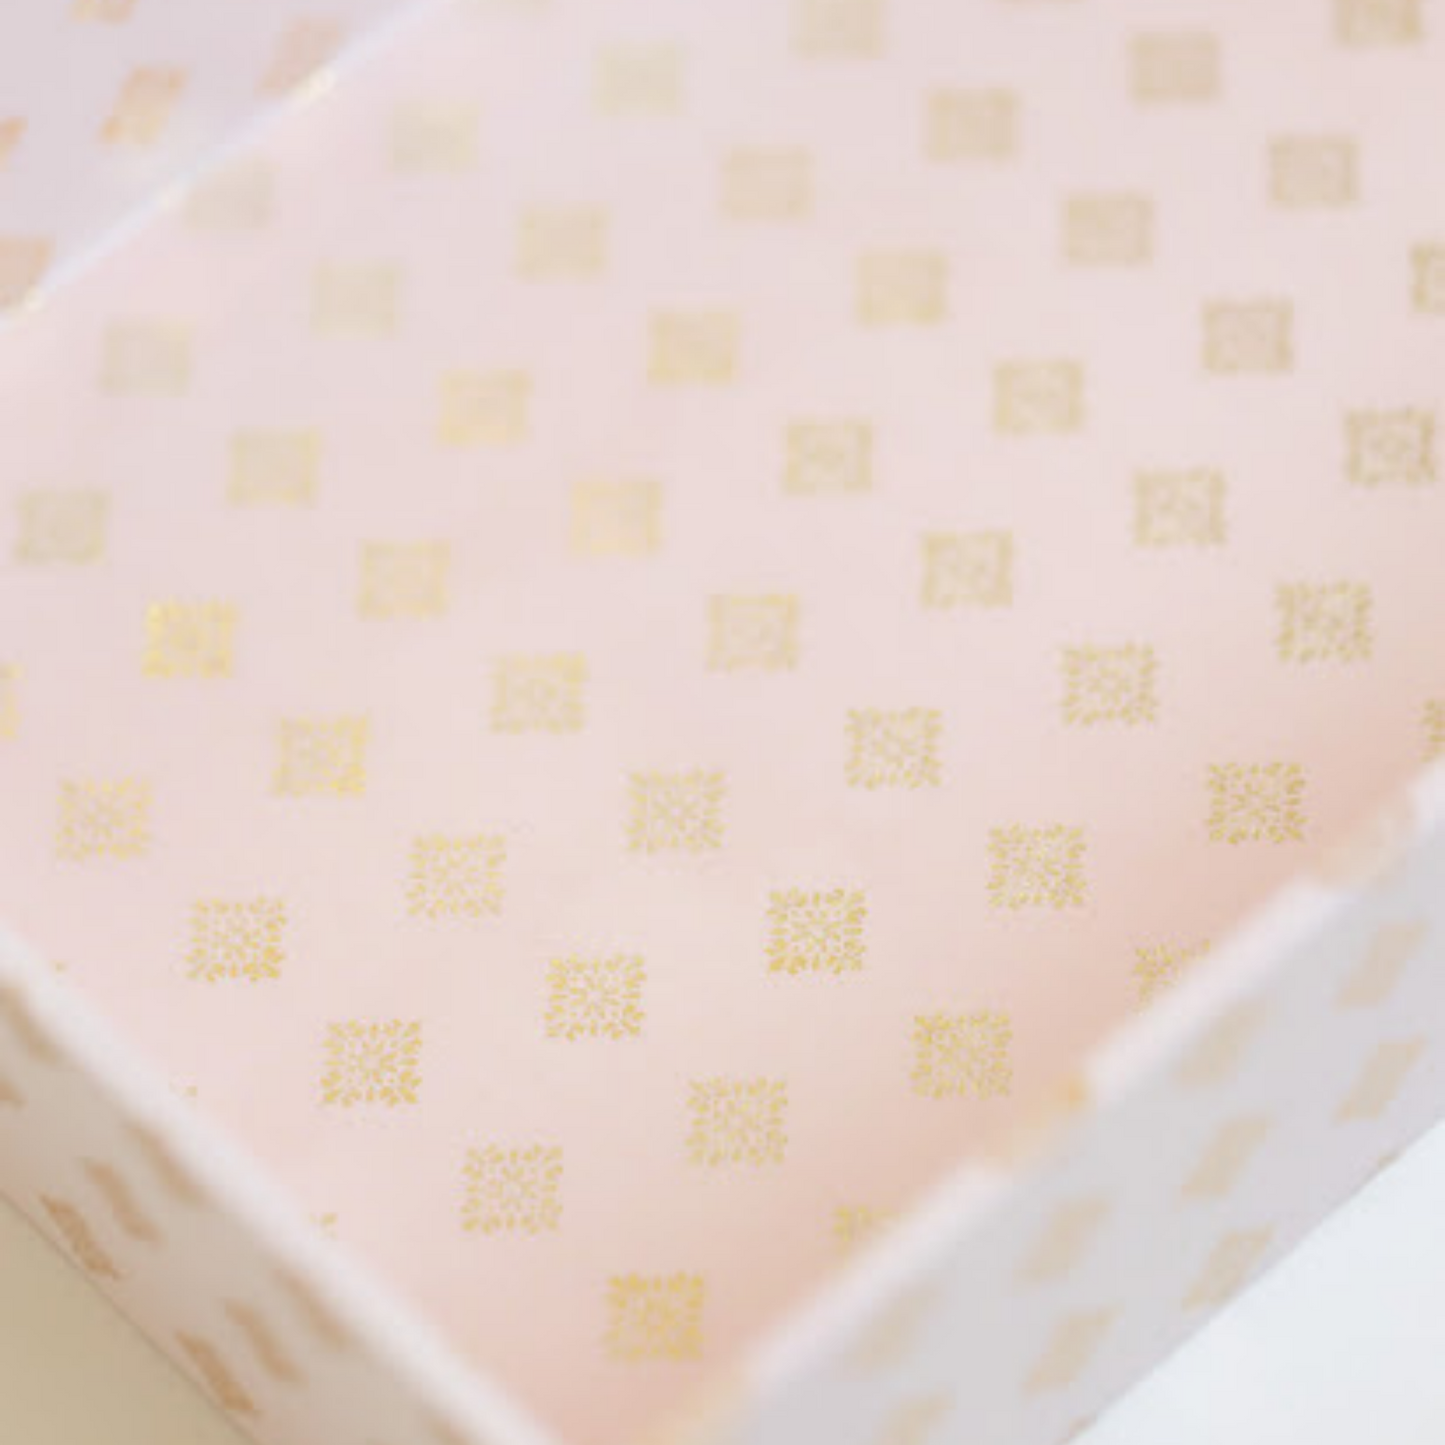 Blush Pink Khari Shugun Gifting Hamper- Set of 3 or single piece